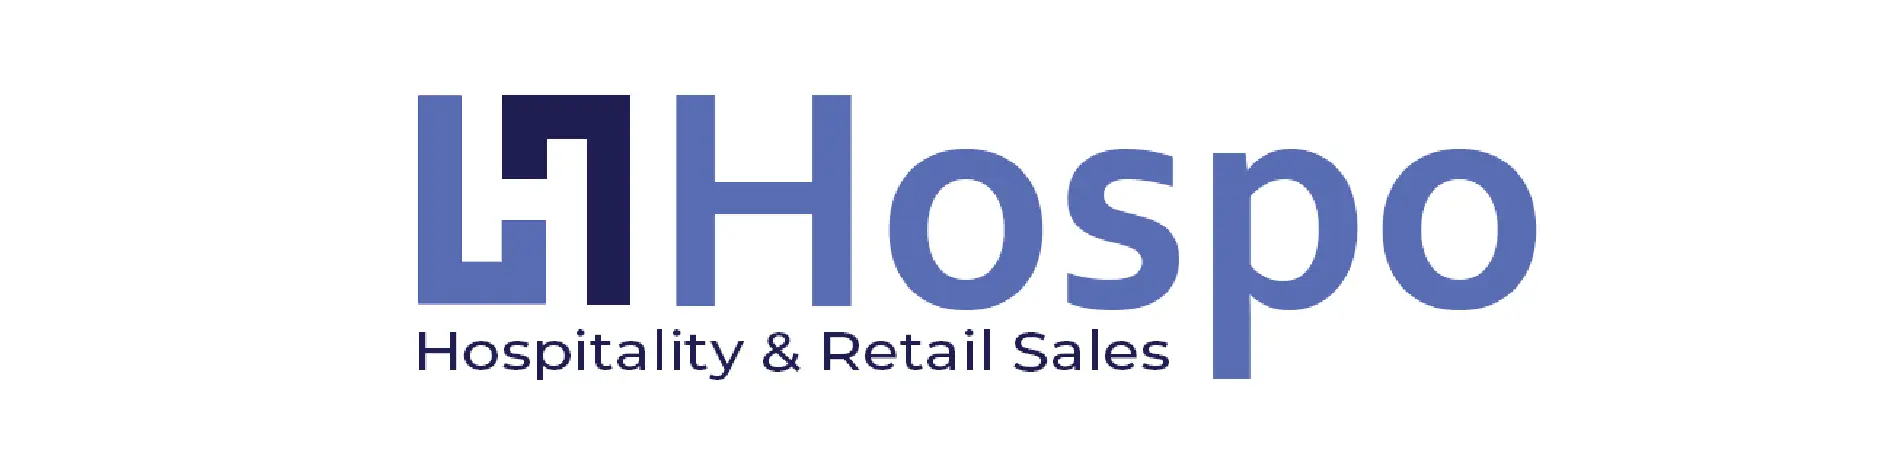 Hospo_Logo-01